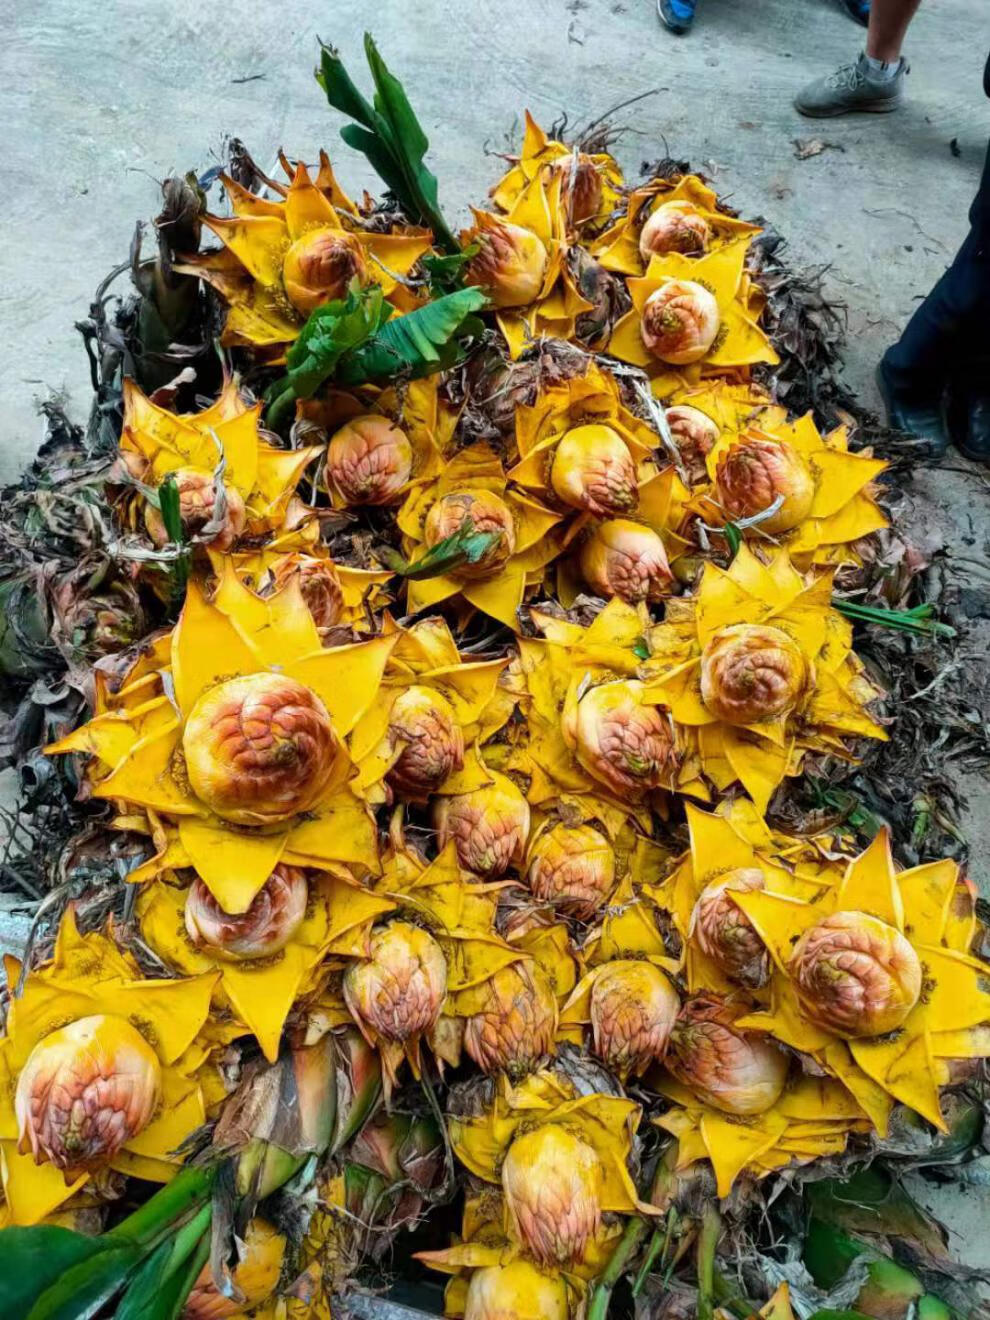 尼泊尔千瓣金莲树图片